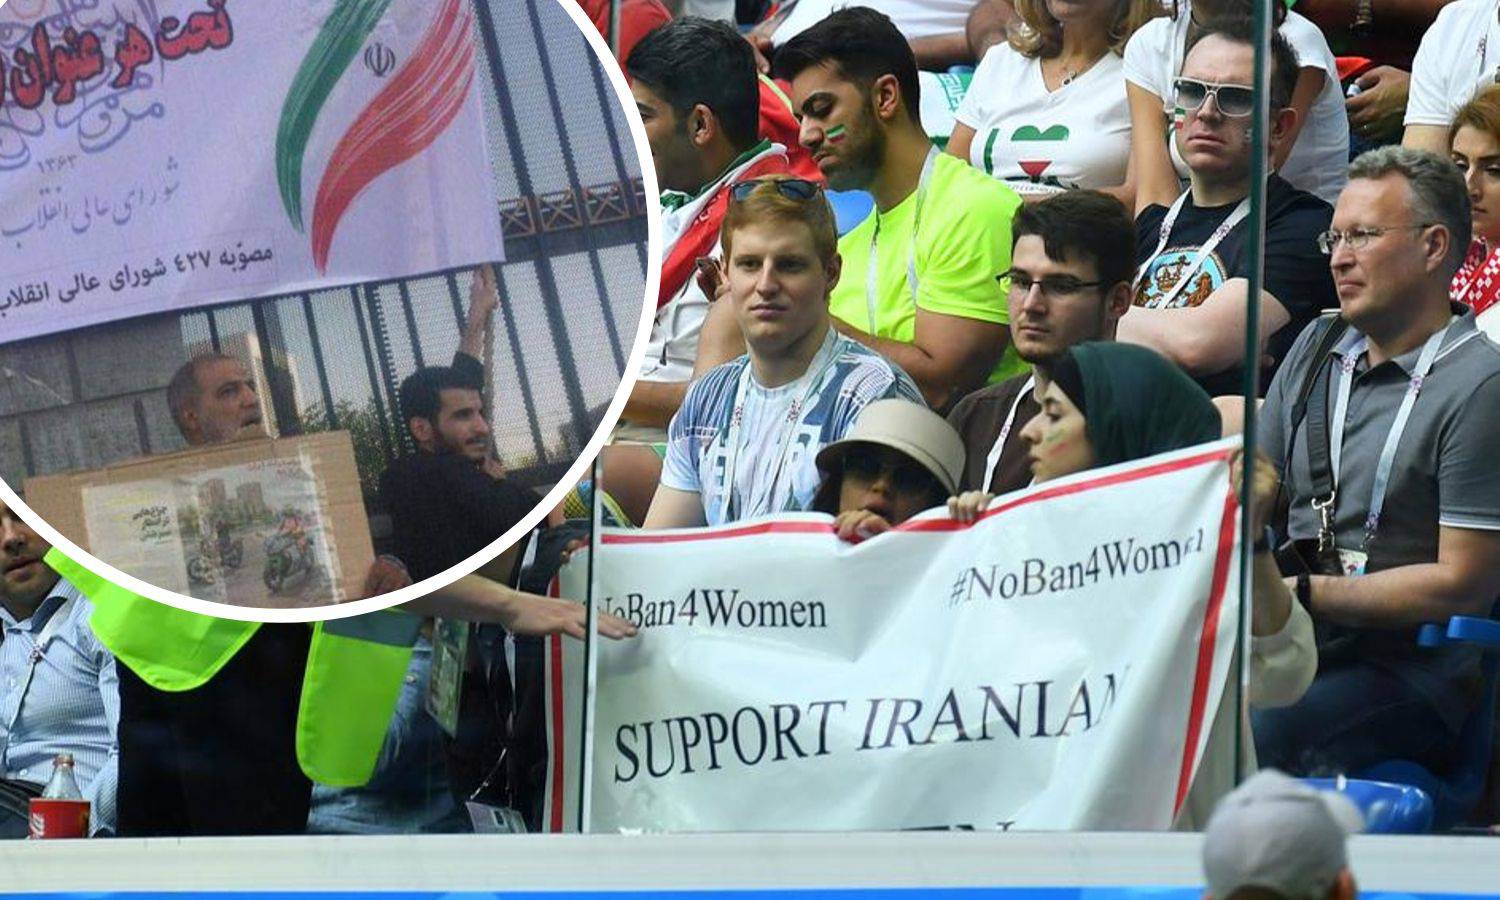 Iranci popustili: Žene će nakon 40 godina pogledati nogomet...